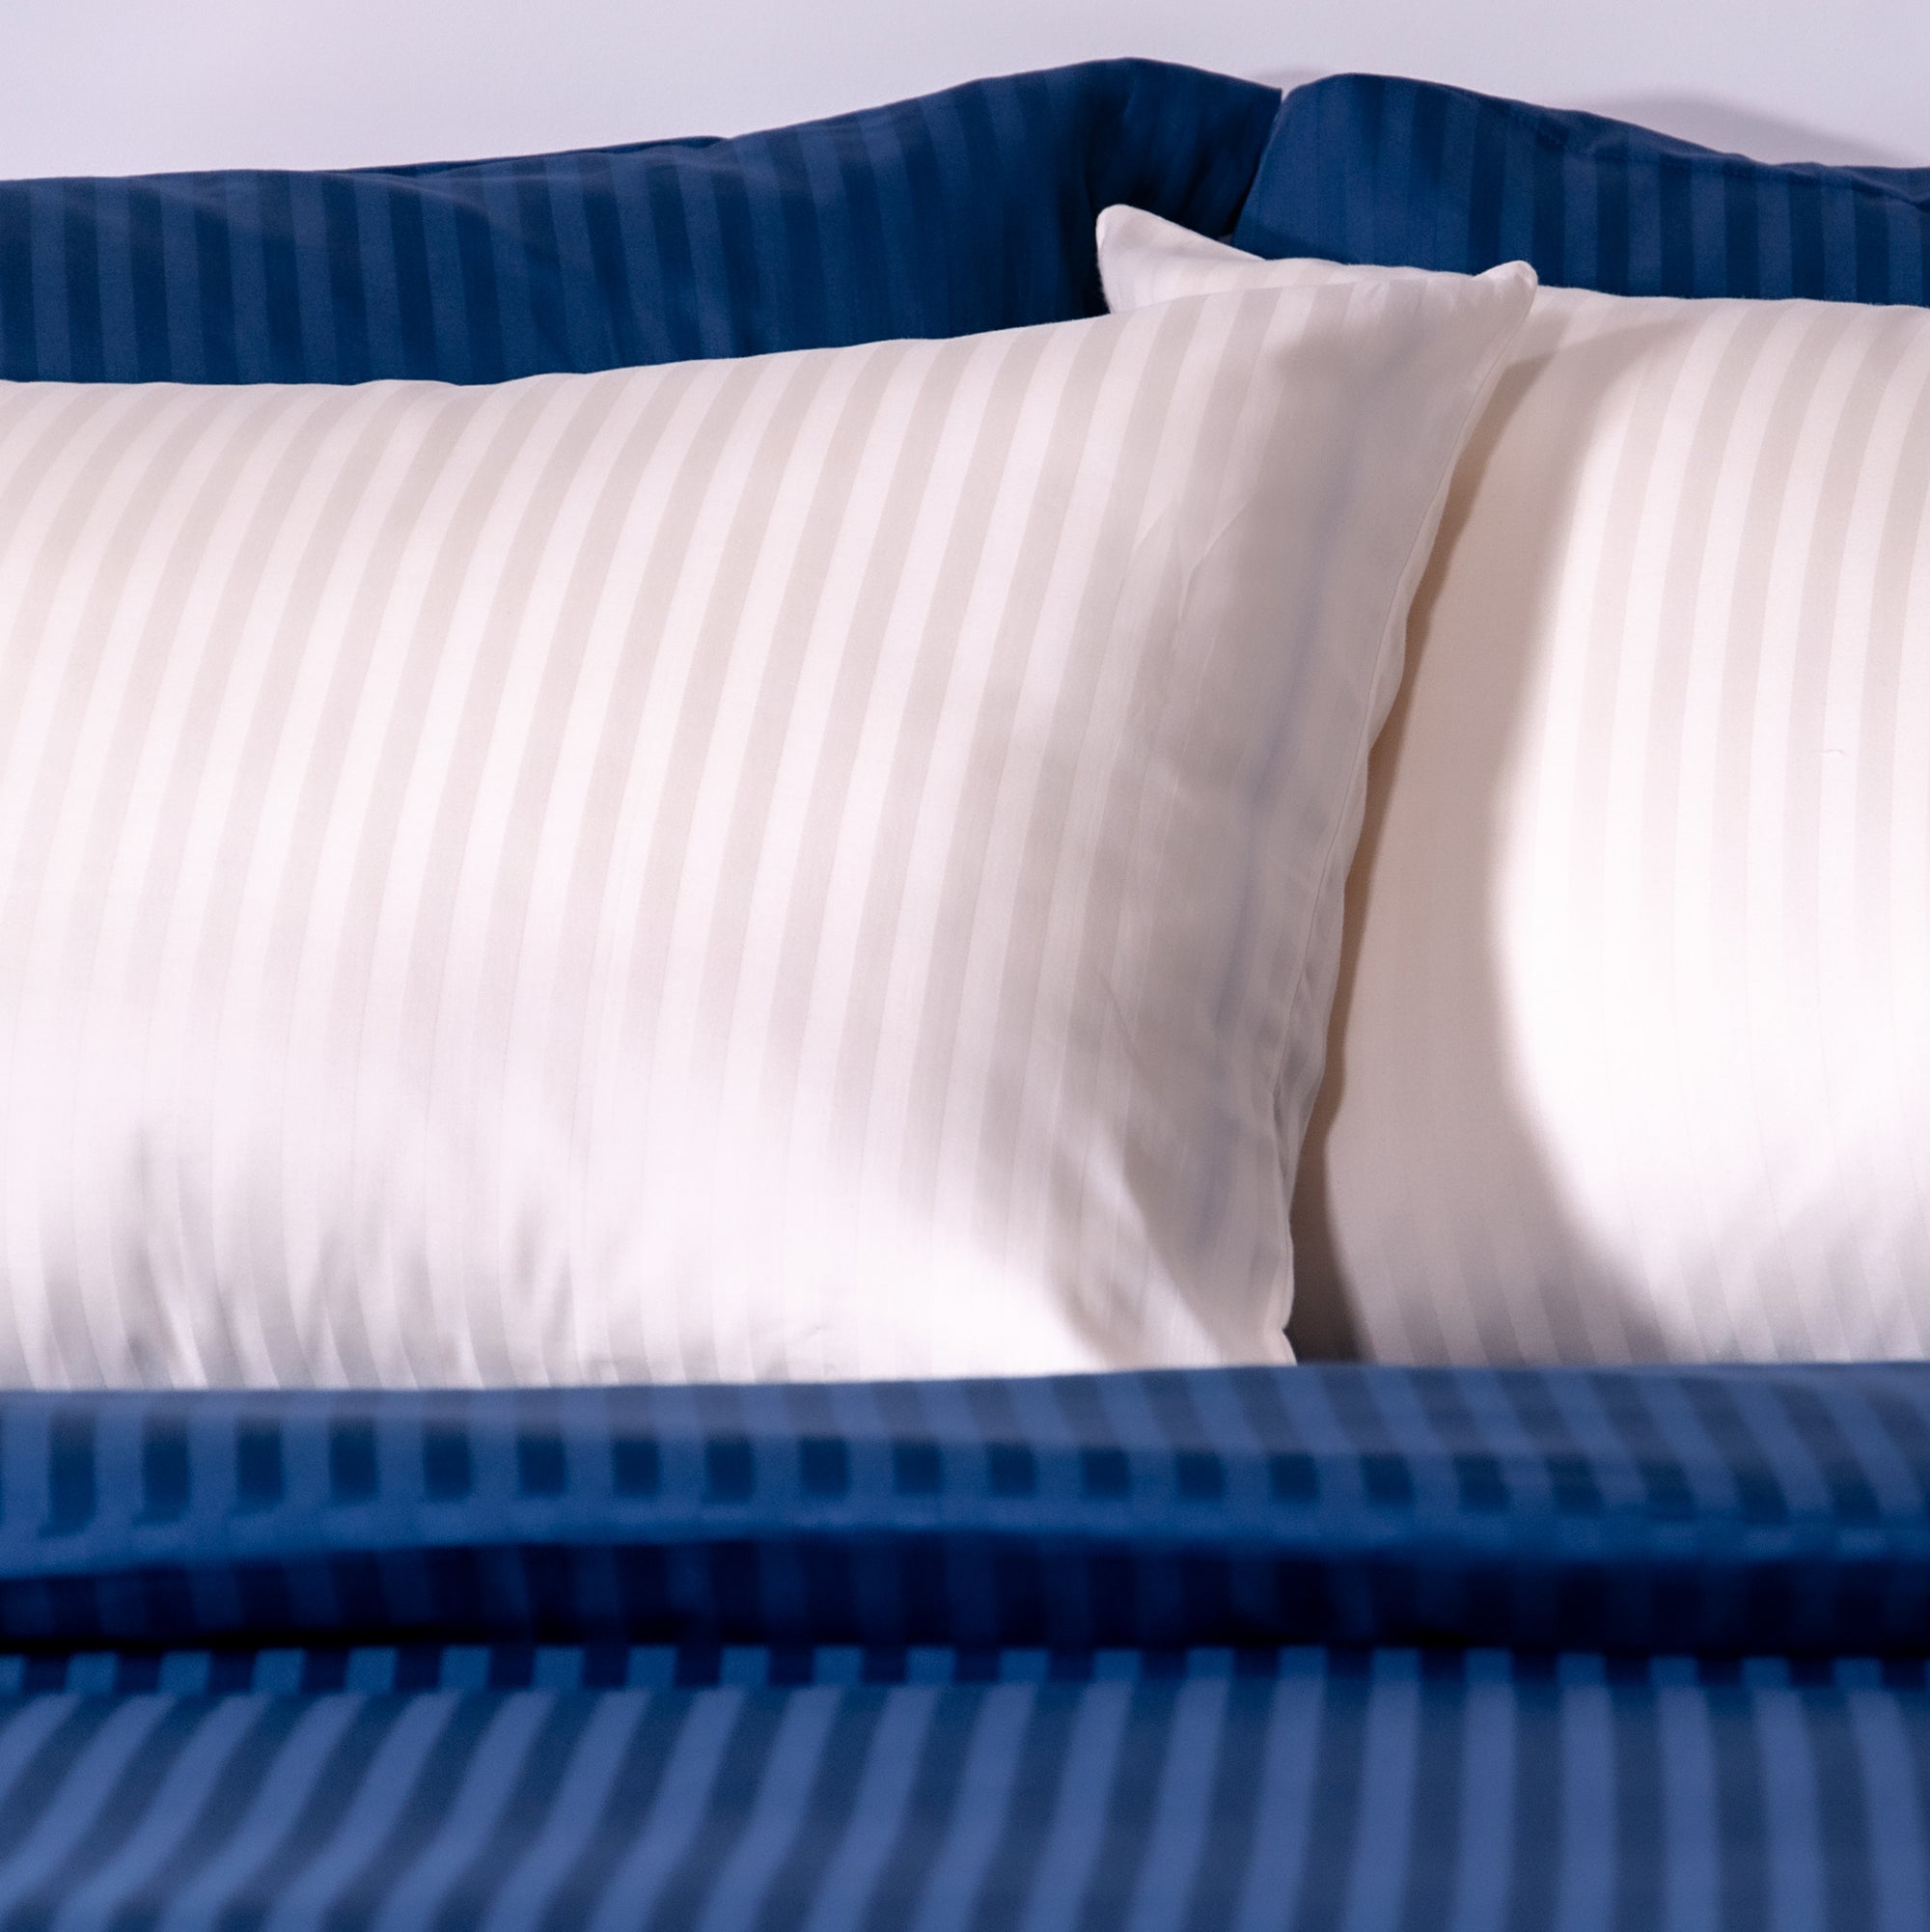 Einteiliger, marineblau gestreifter Bettbezug aus 100 % Baumwollsatin